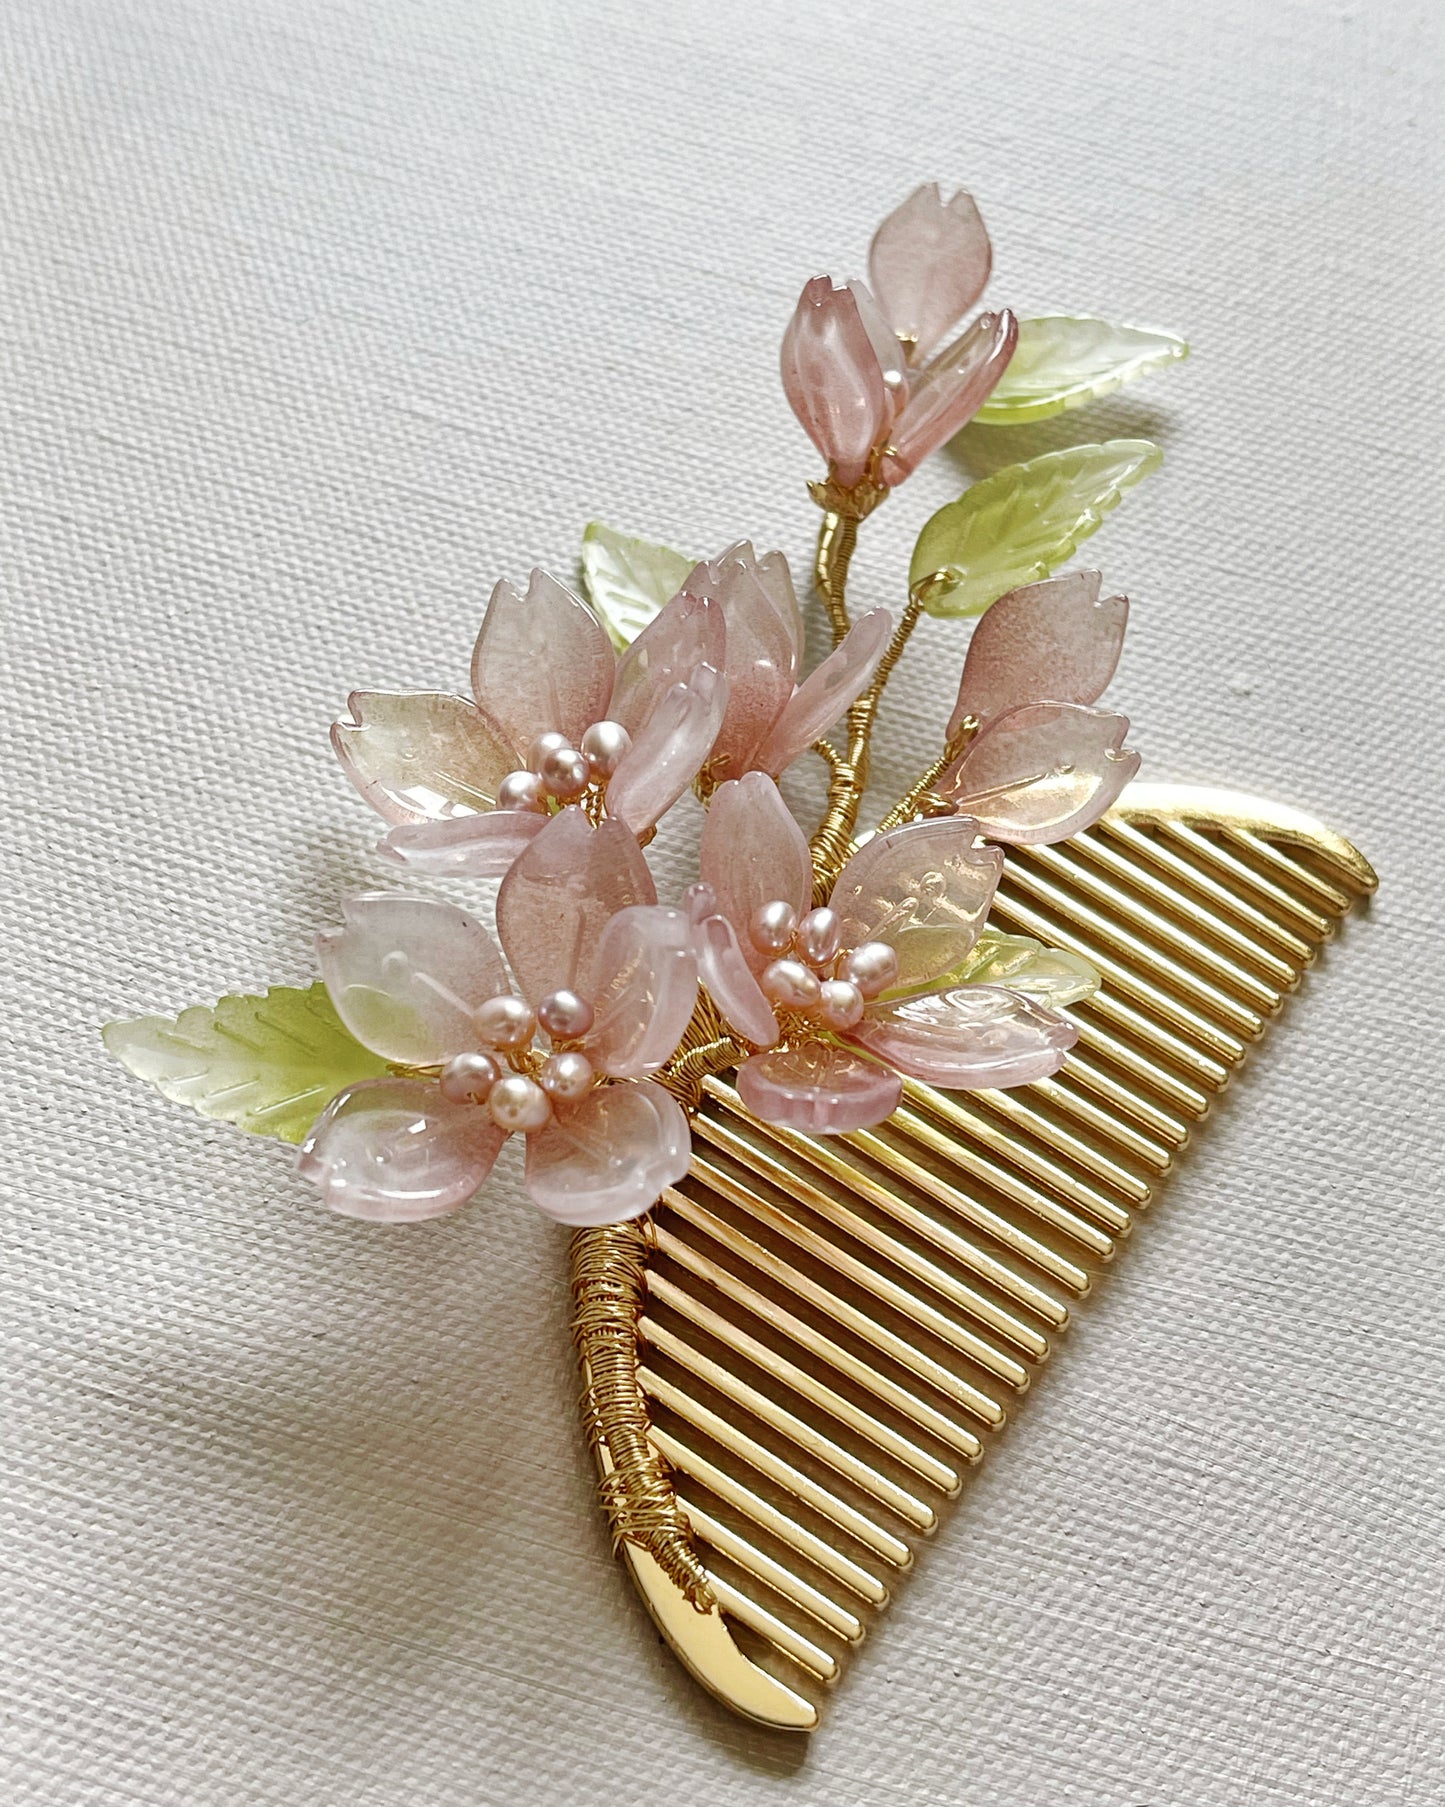 Someiyoshino sakura blooming foliage hairslide in antique pink